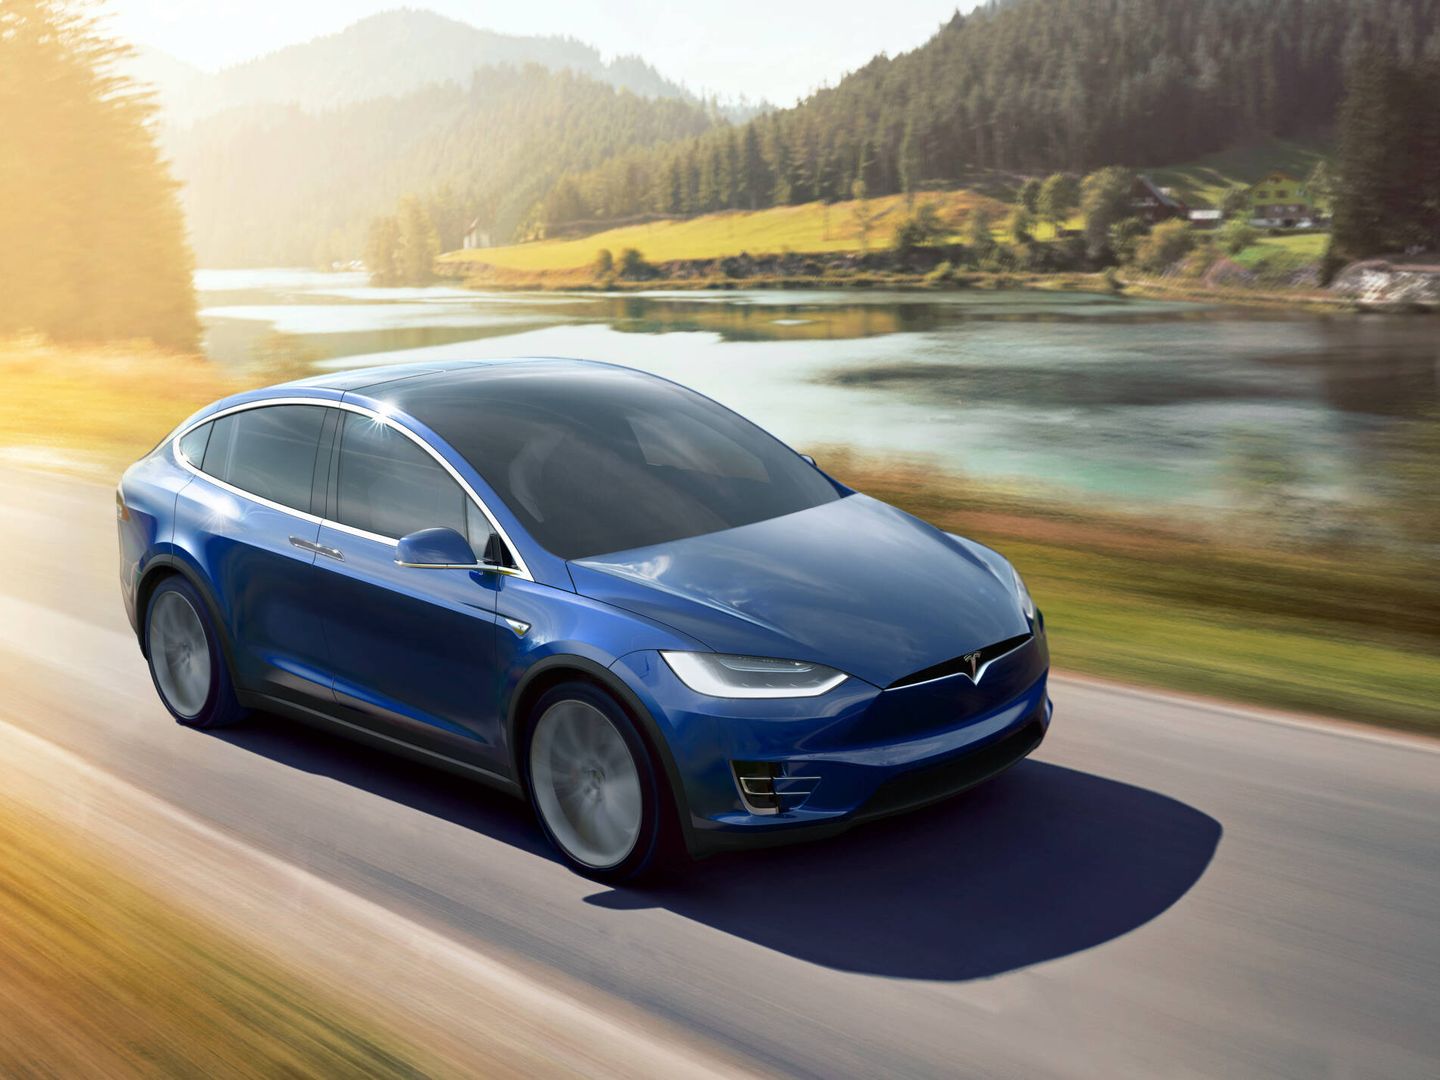 Como otros coches actuales, los Tesla ofrecen sistema de conducción semiautónoma, pero siempre requieren de la supervisión del conductor.